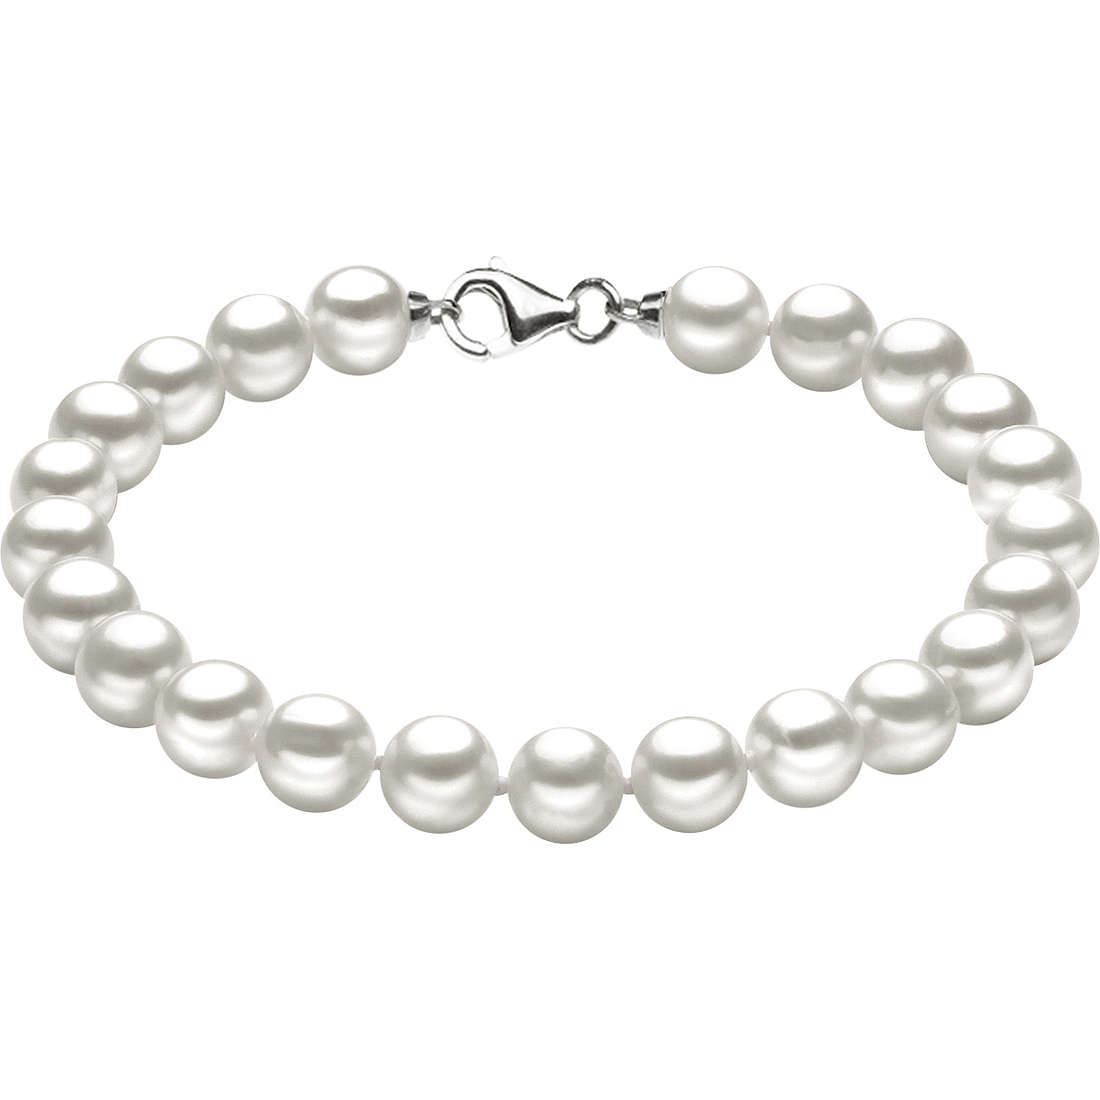 Bracelet Womens Comete Gioielli Pearls Silver BRQ 108 S